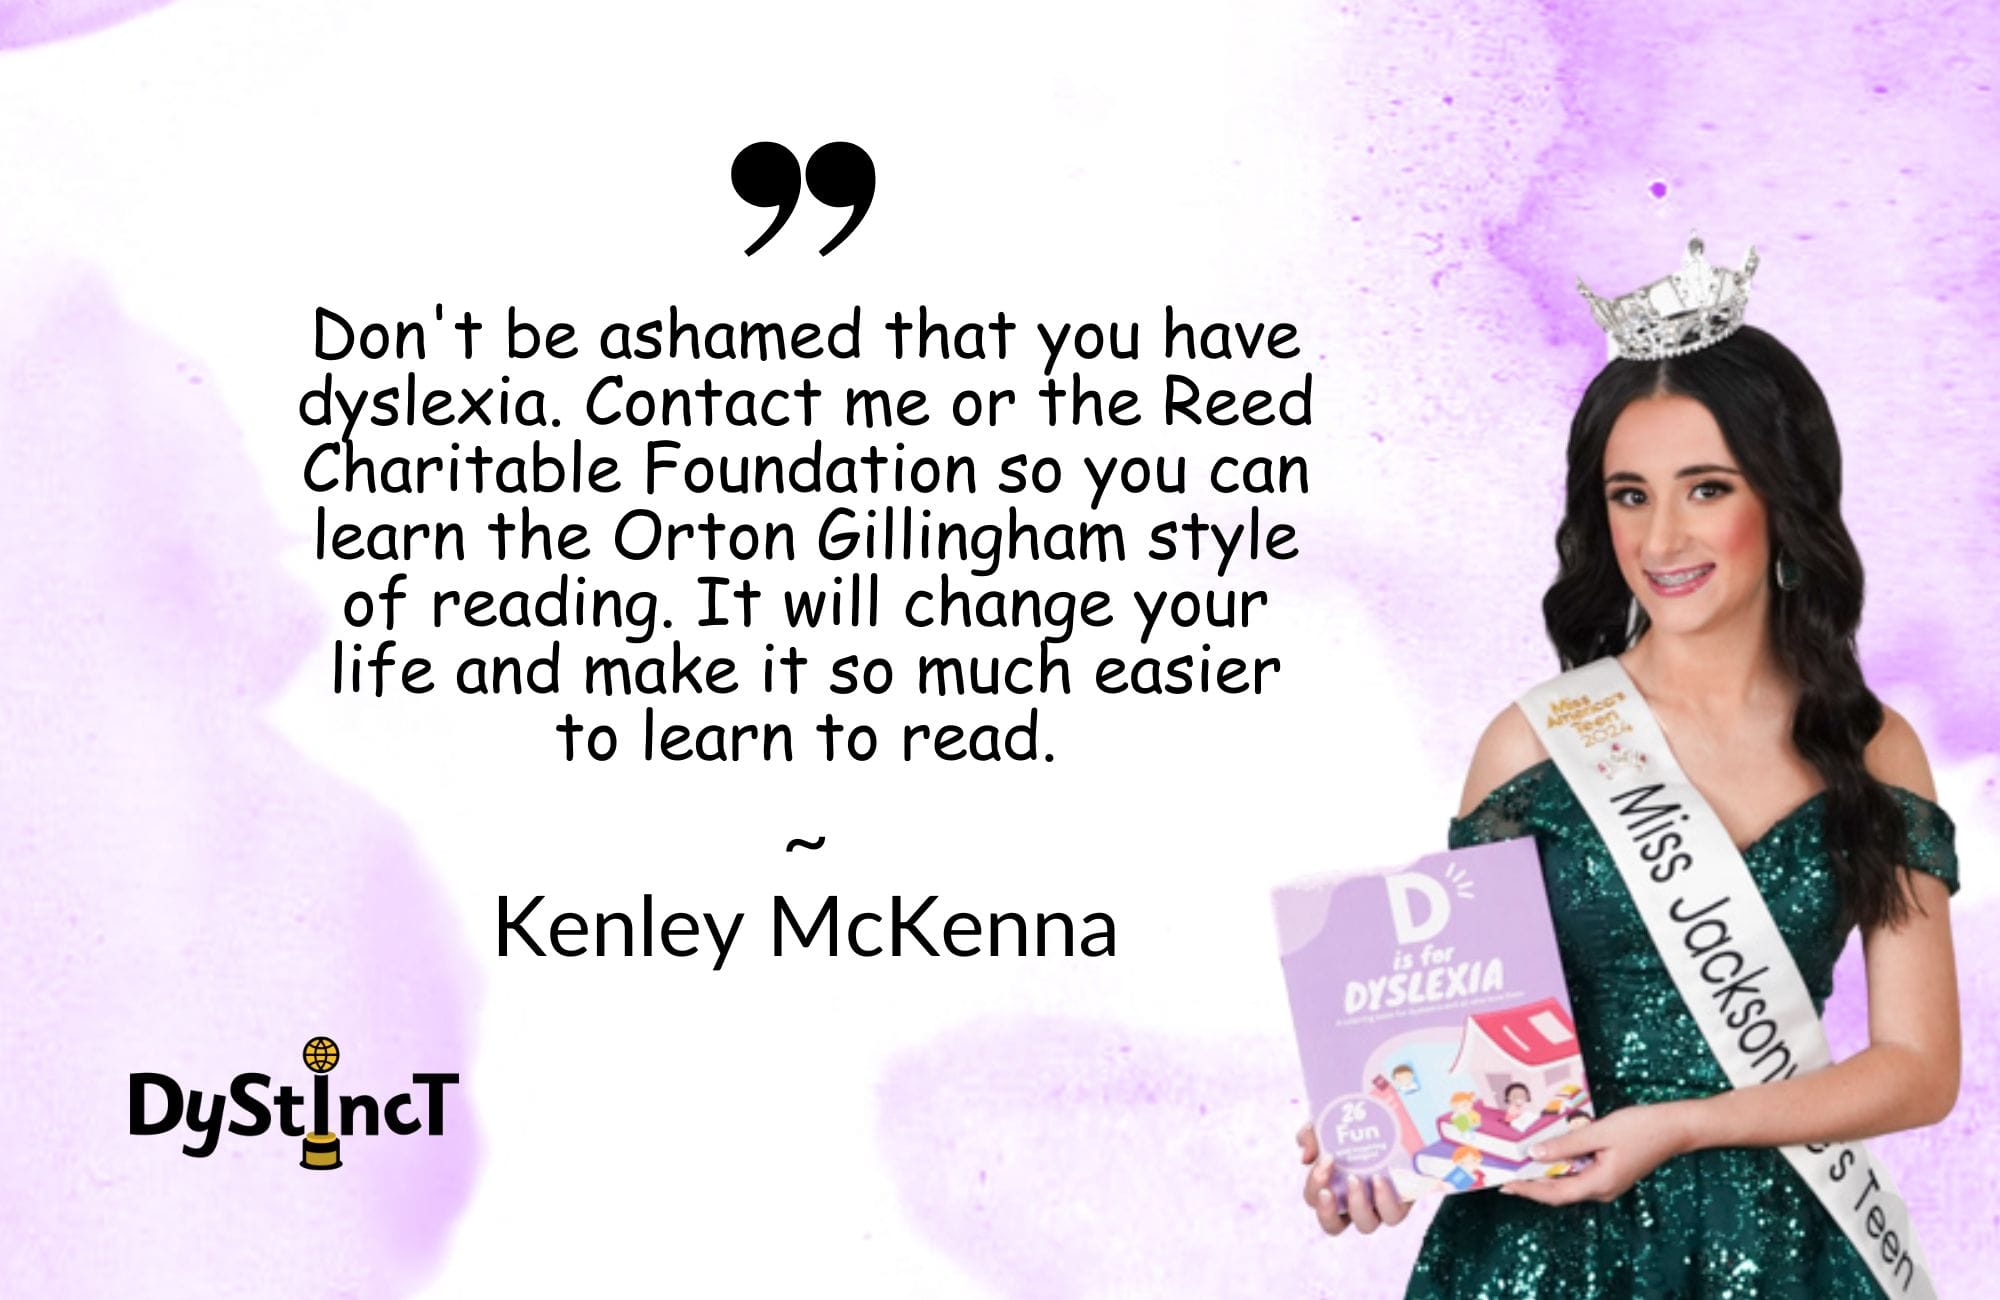 Issue 20: Dystinct Journey of Kenley McKenna